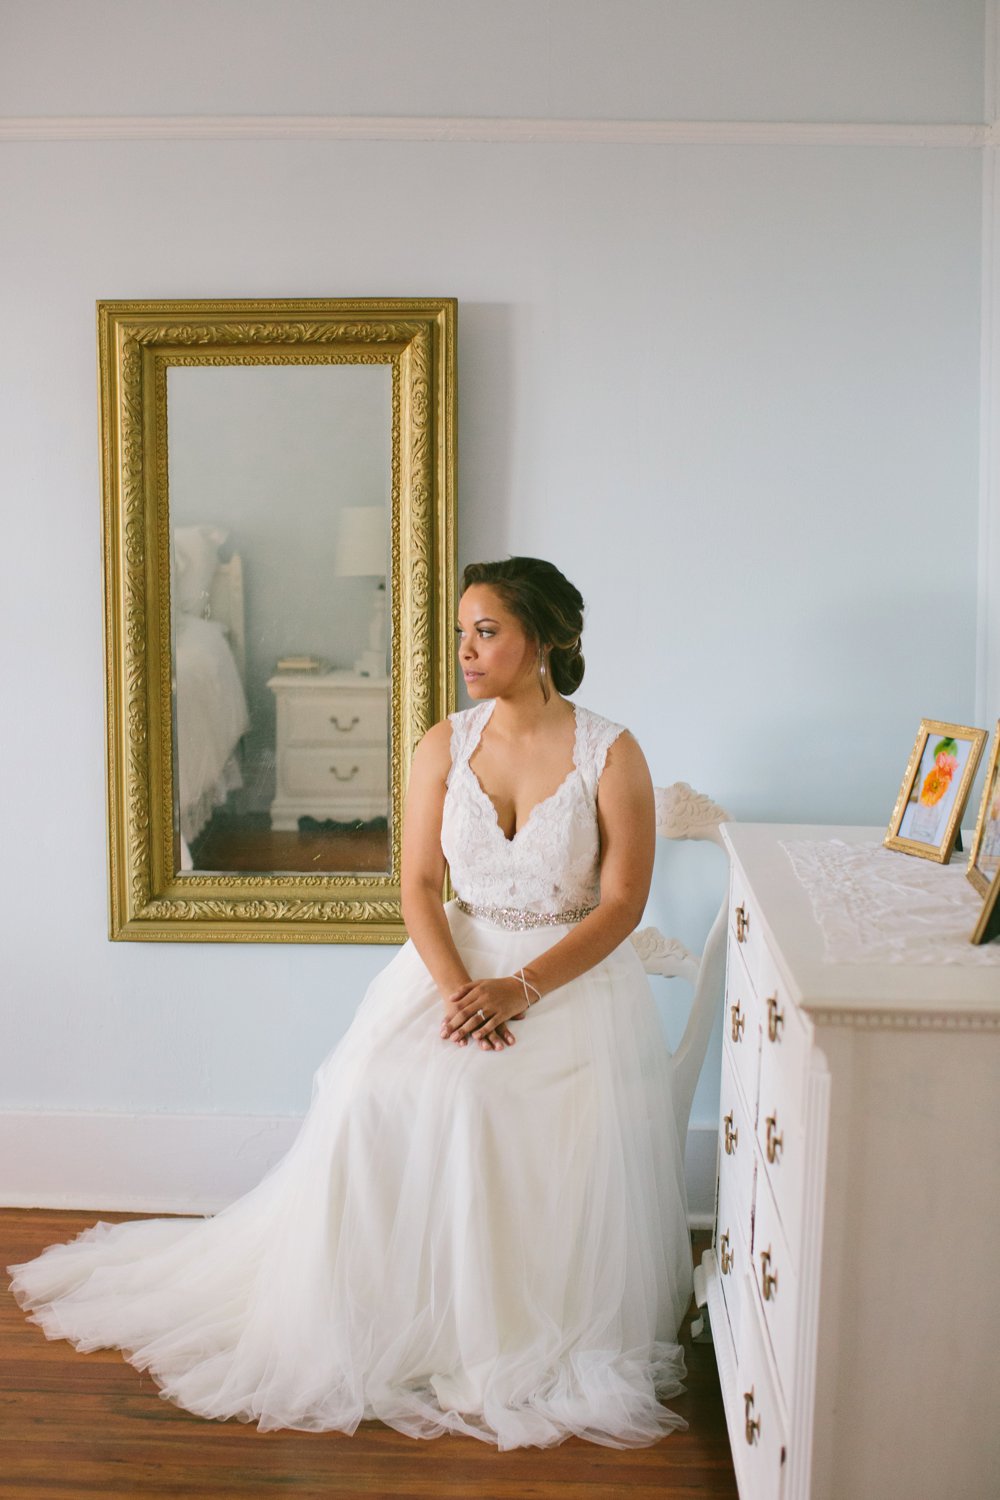 Taylor Rae Photography - Charleston bridals